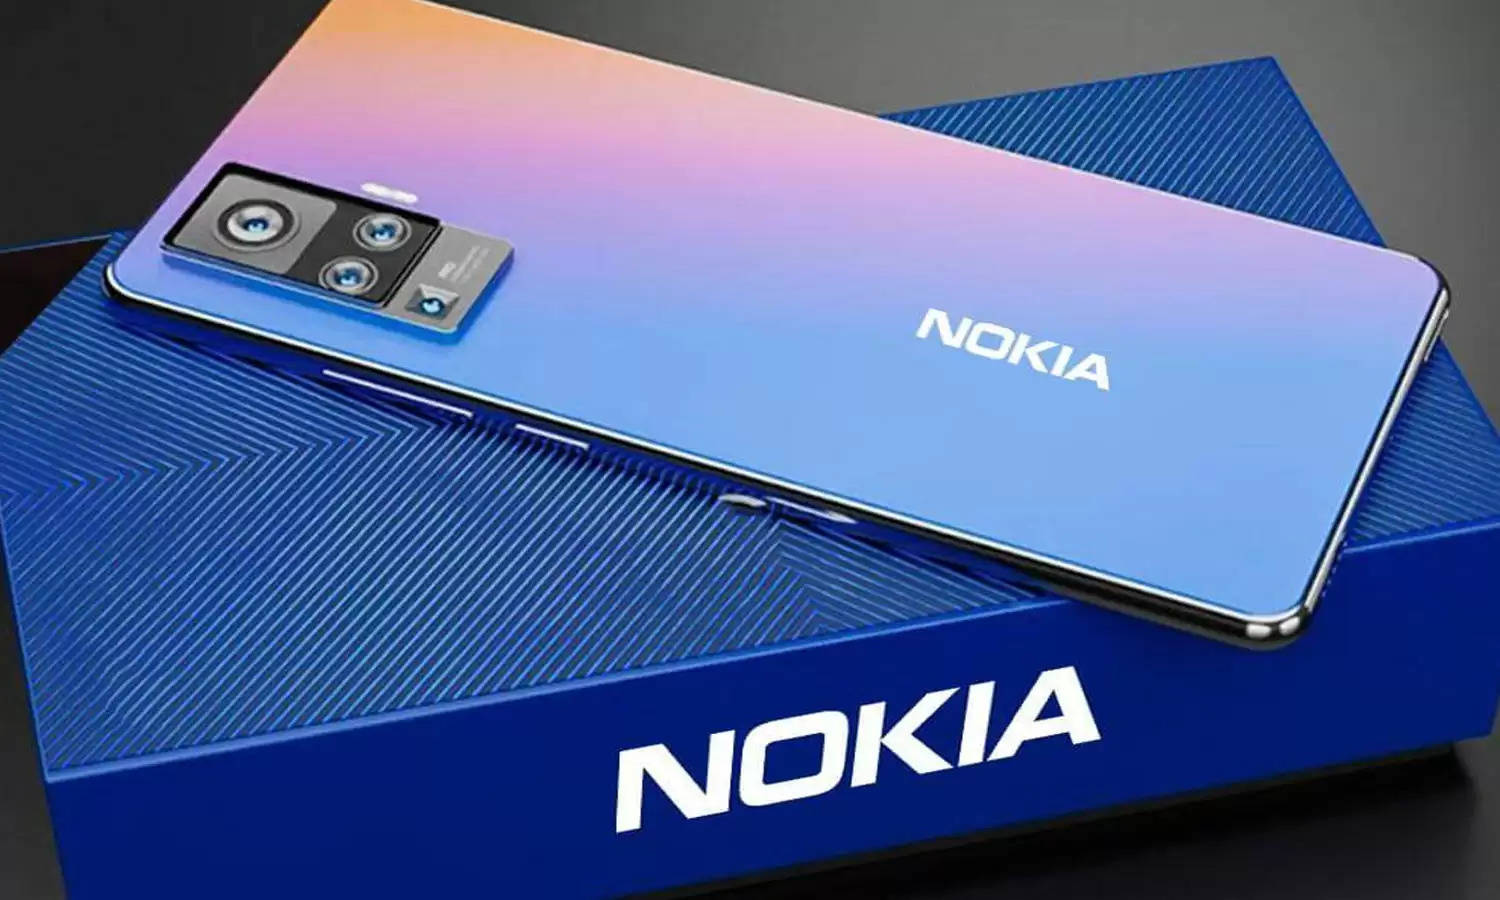 मार्केट में जबरदस्त सस्ते Nokia 5G स्मार्टफ़ोन की इंन्ट्री, 200 मेगा पिक्सल कैमरे के साथ देखें फीचर्स